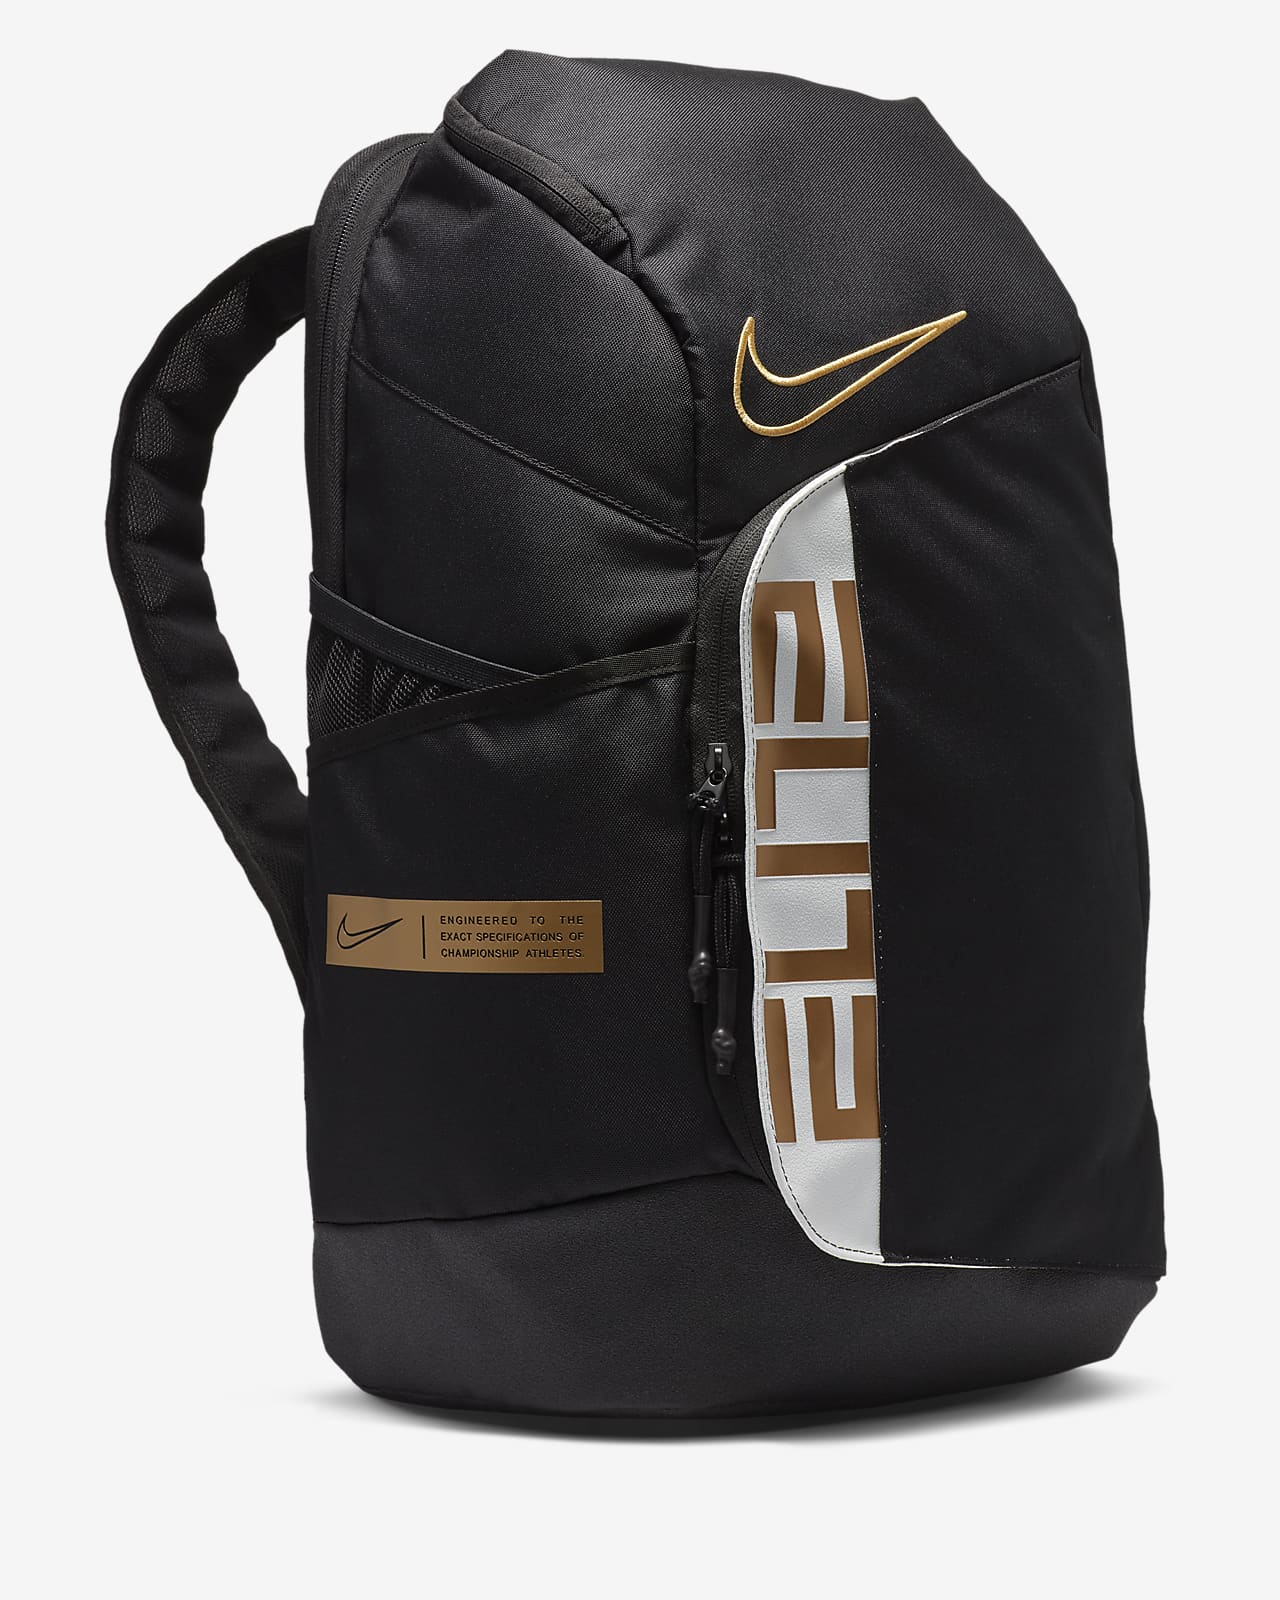 nike elite backpack near me